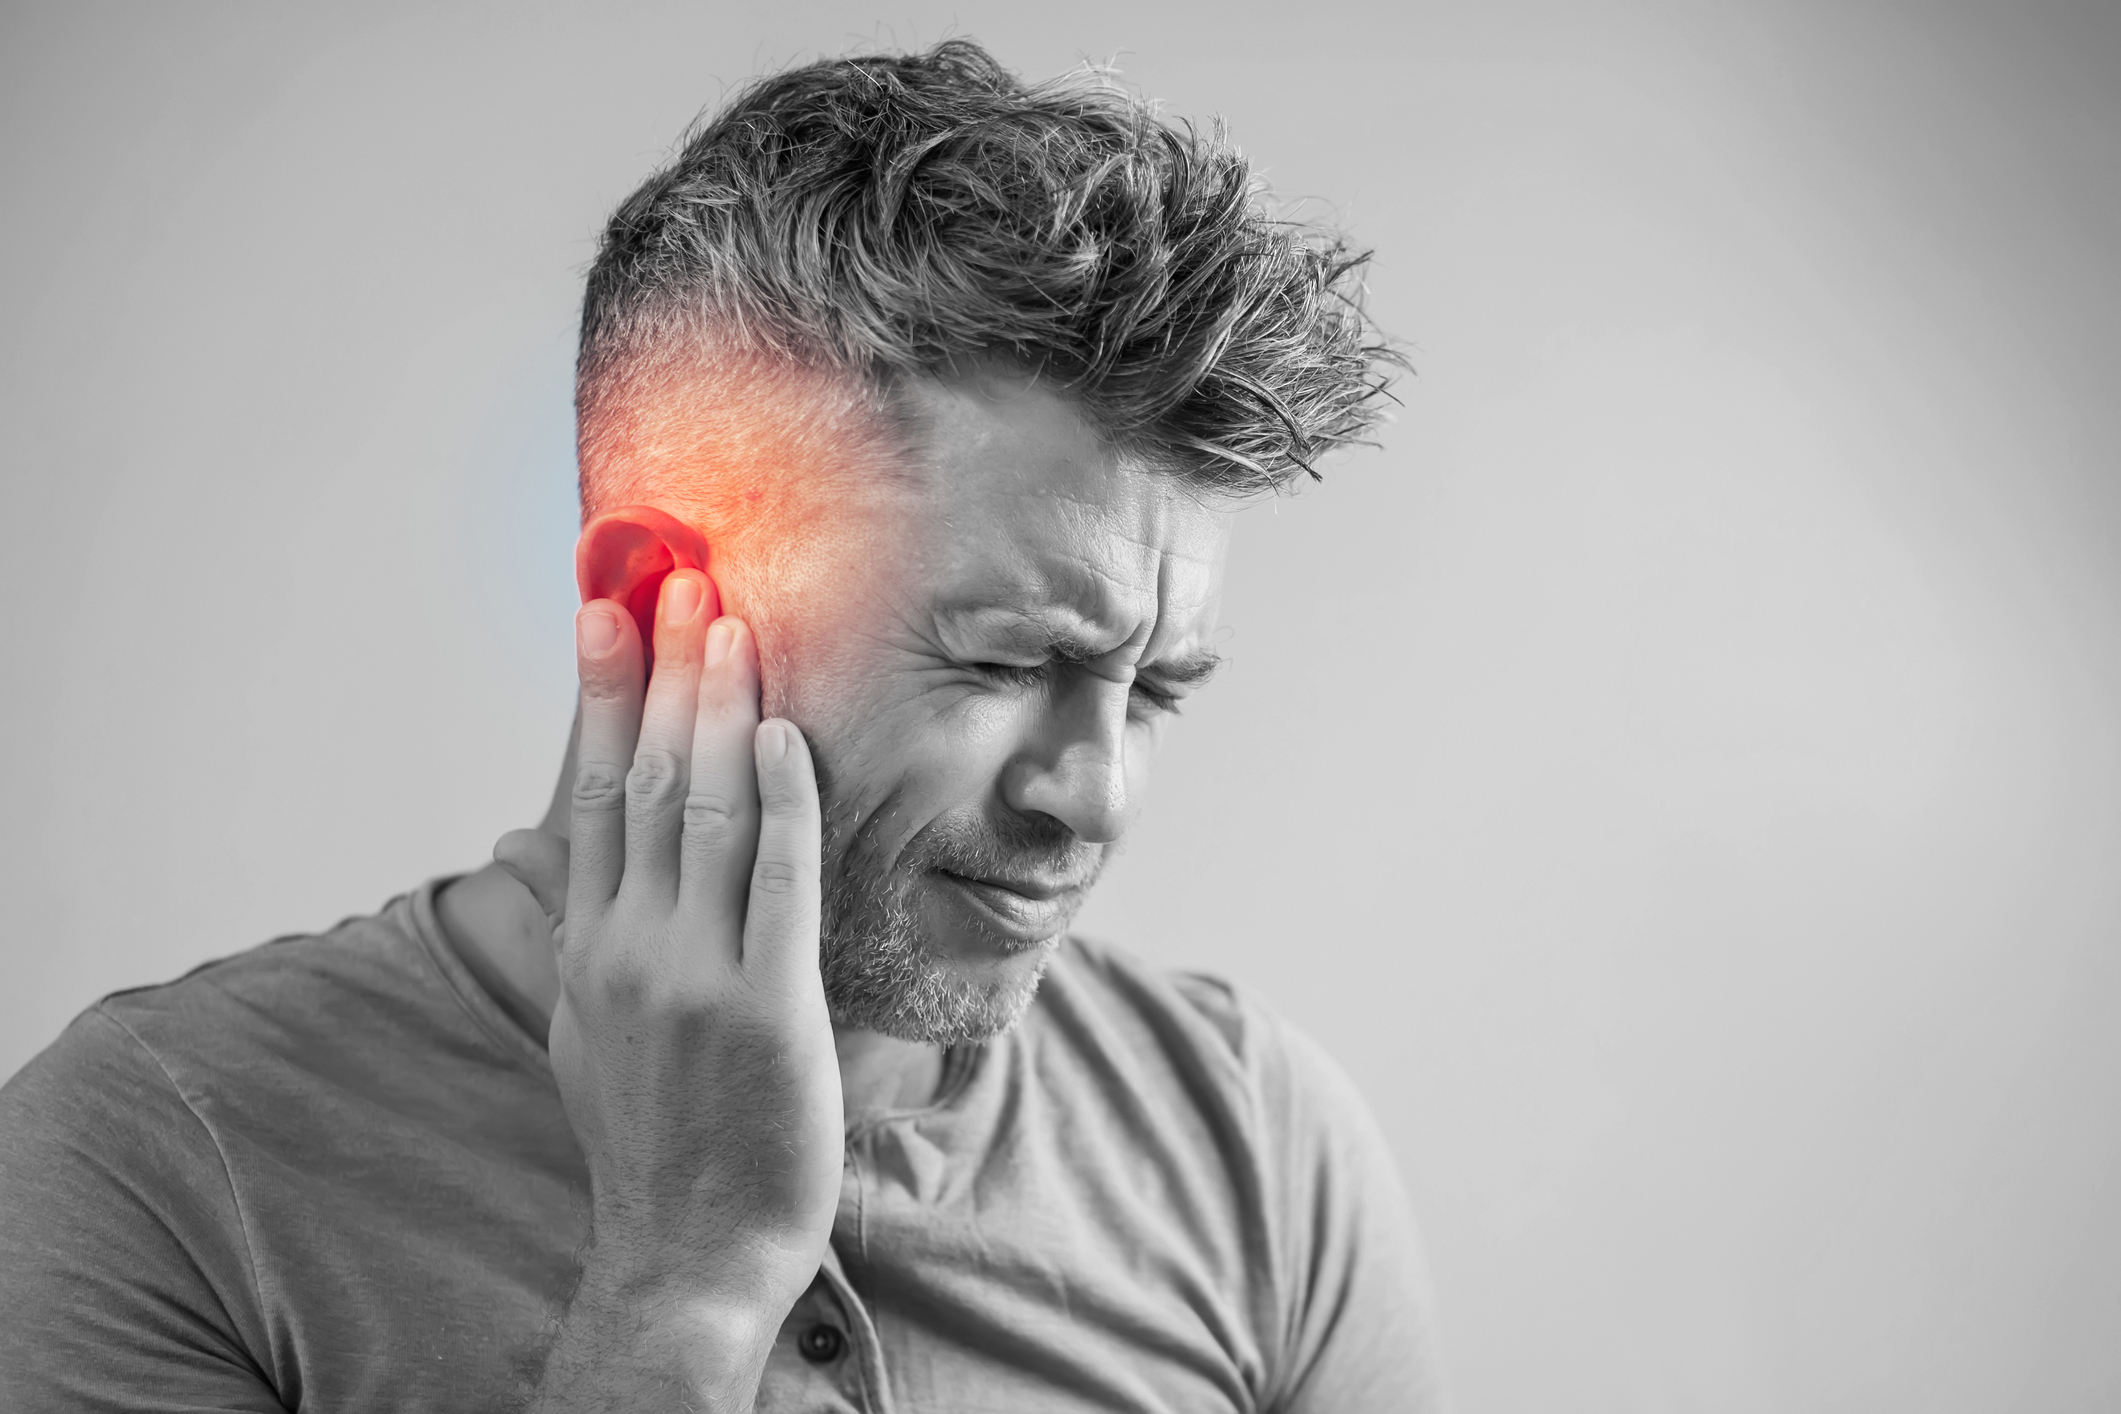 Πόνος στο αυτί: Αίτια και συμπτώματα – Τι να κάνετε για να τον αντιμετωπίσετε